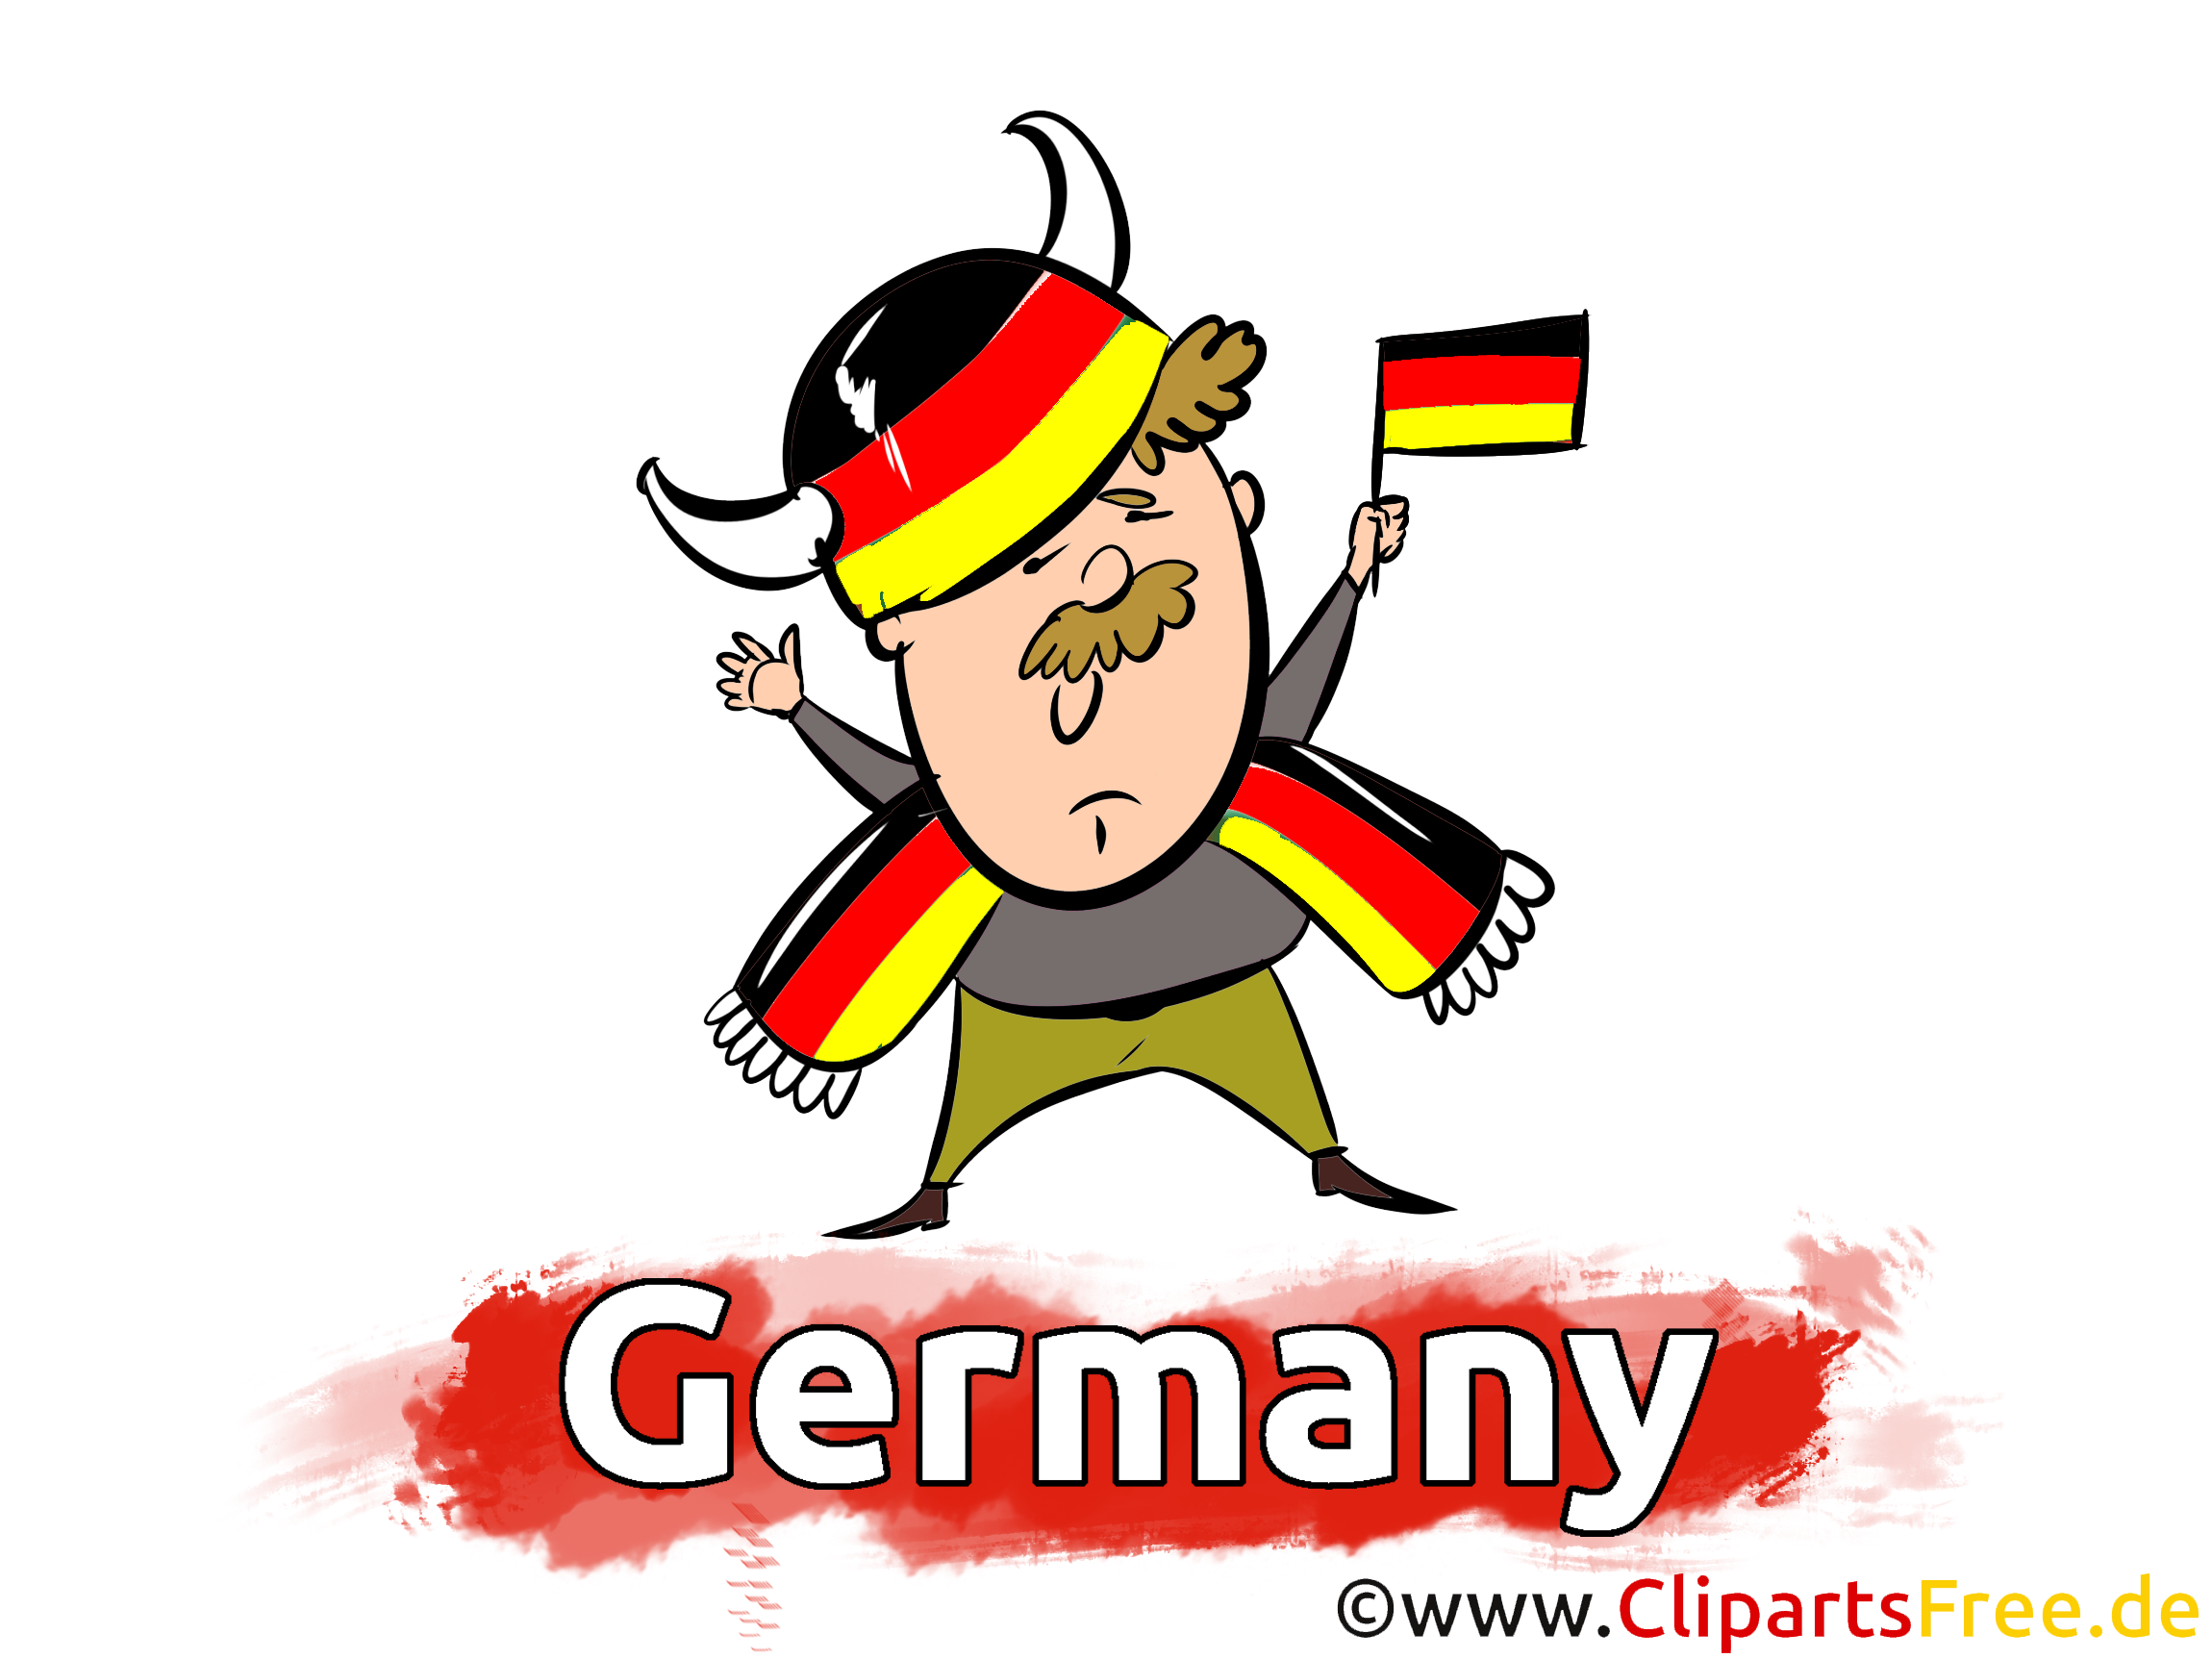 German sport fan image free